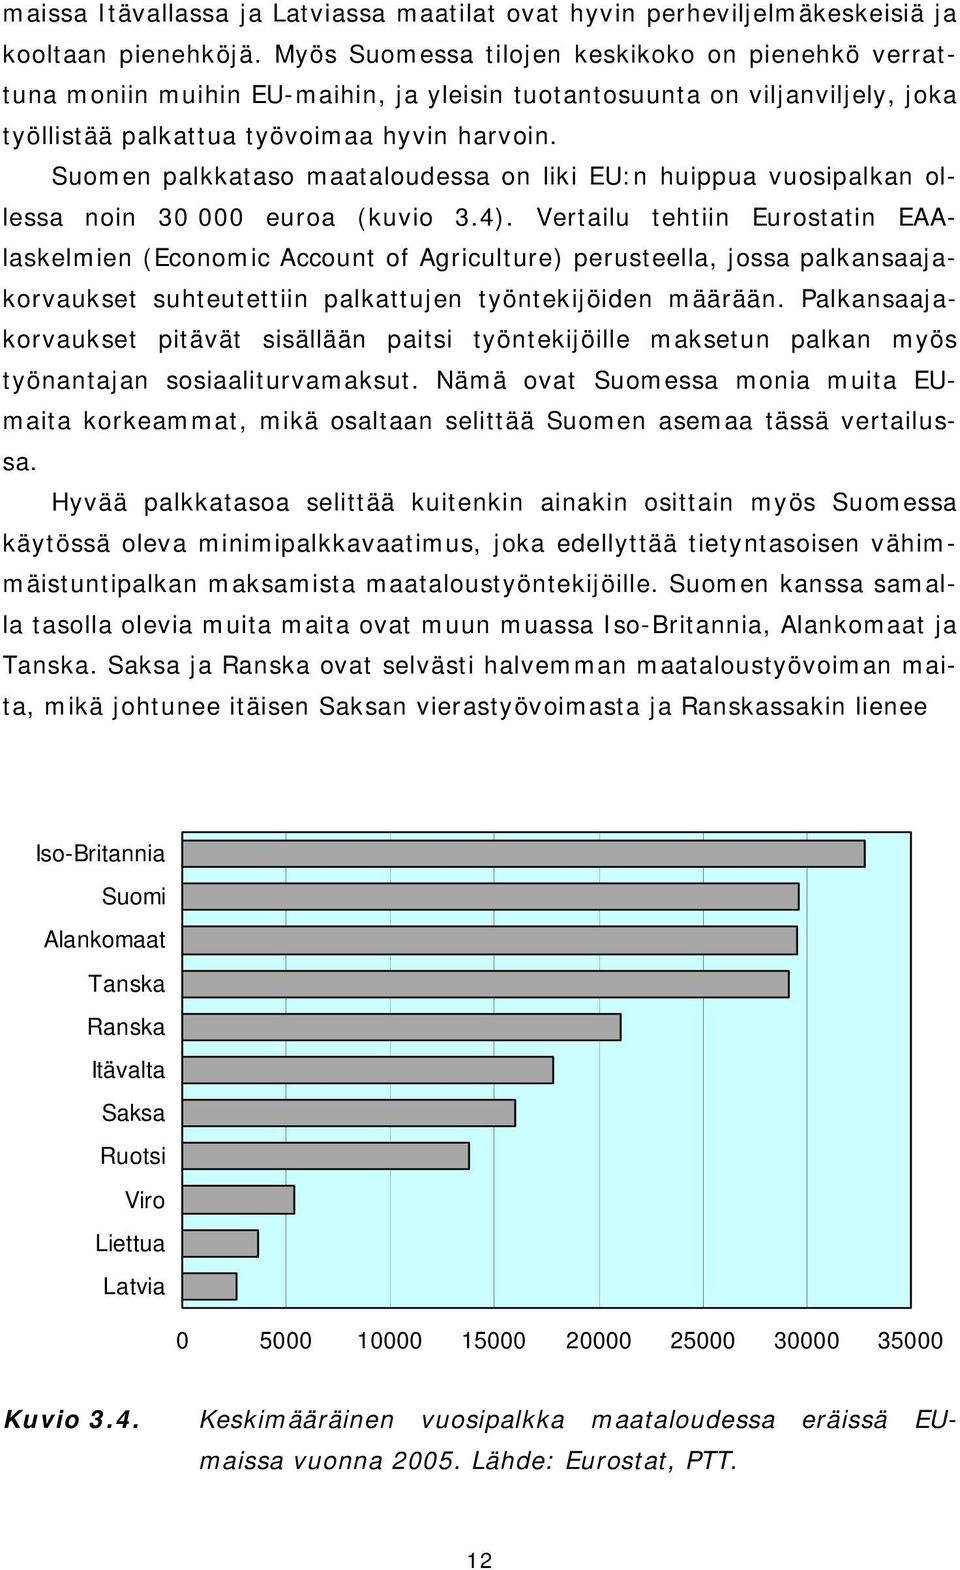 Suomen palkkataso maataloudessa on liki EU:n huippua vuosipalkan ollessa noin 30 000 euroa (kuvio 3.4).